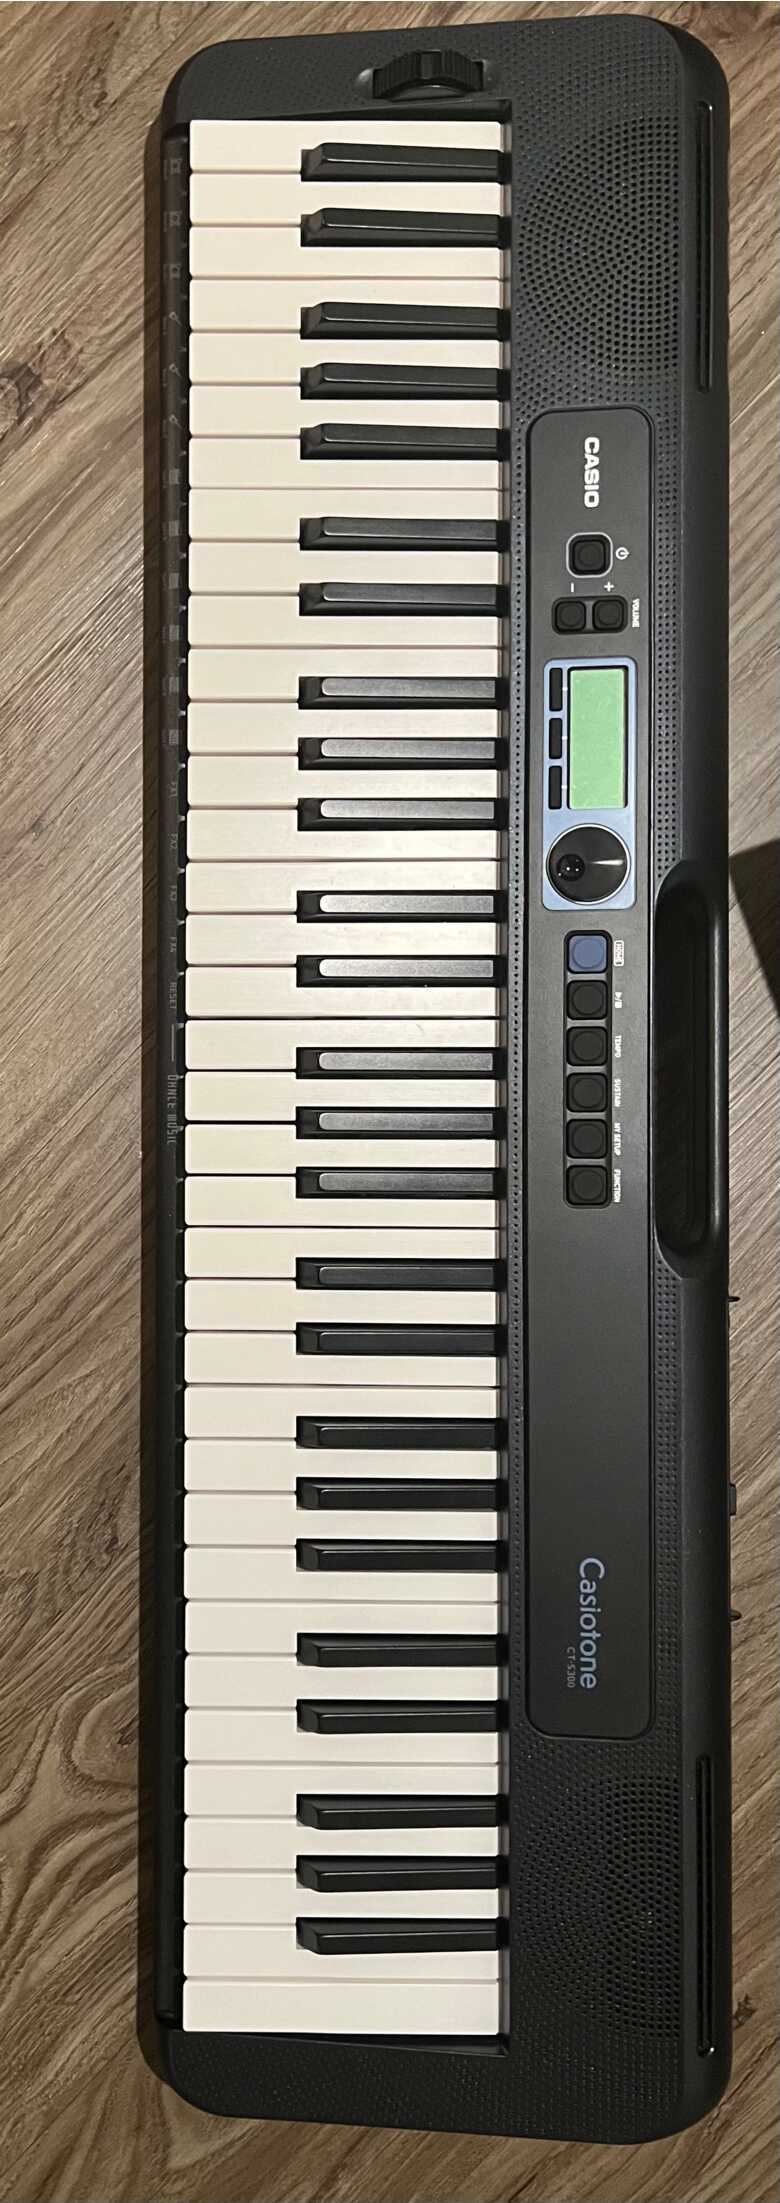 Casio Digital Keyboard -61 keys